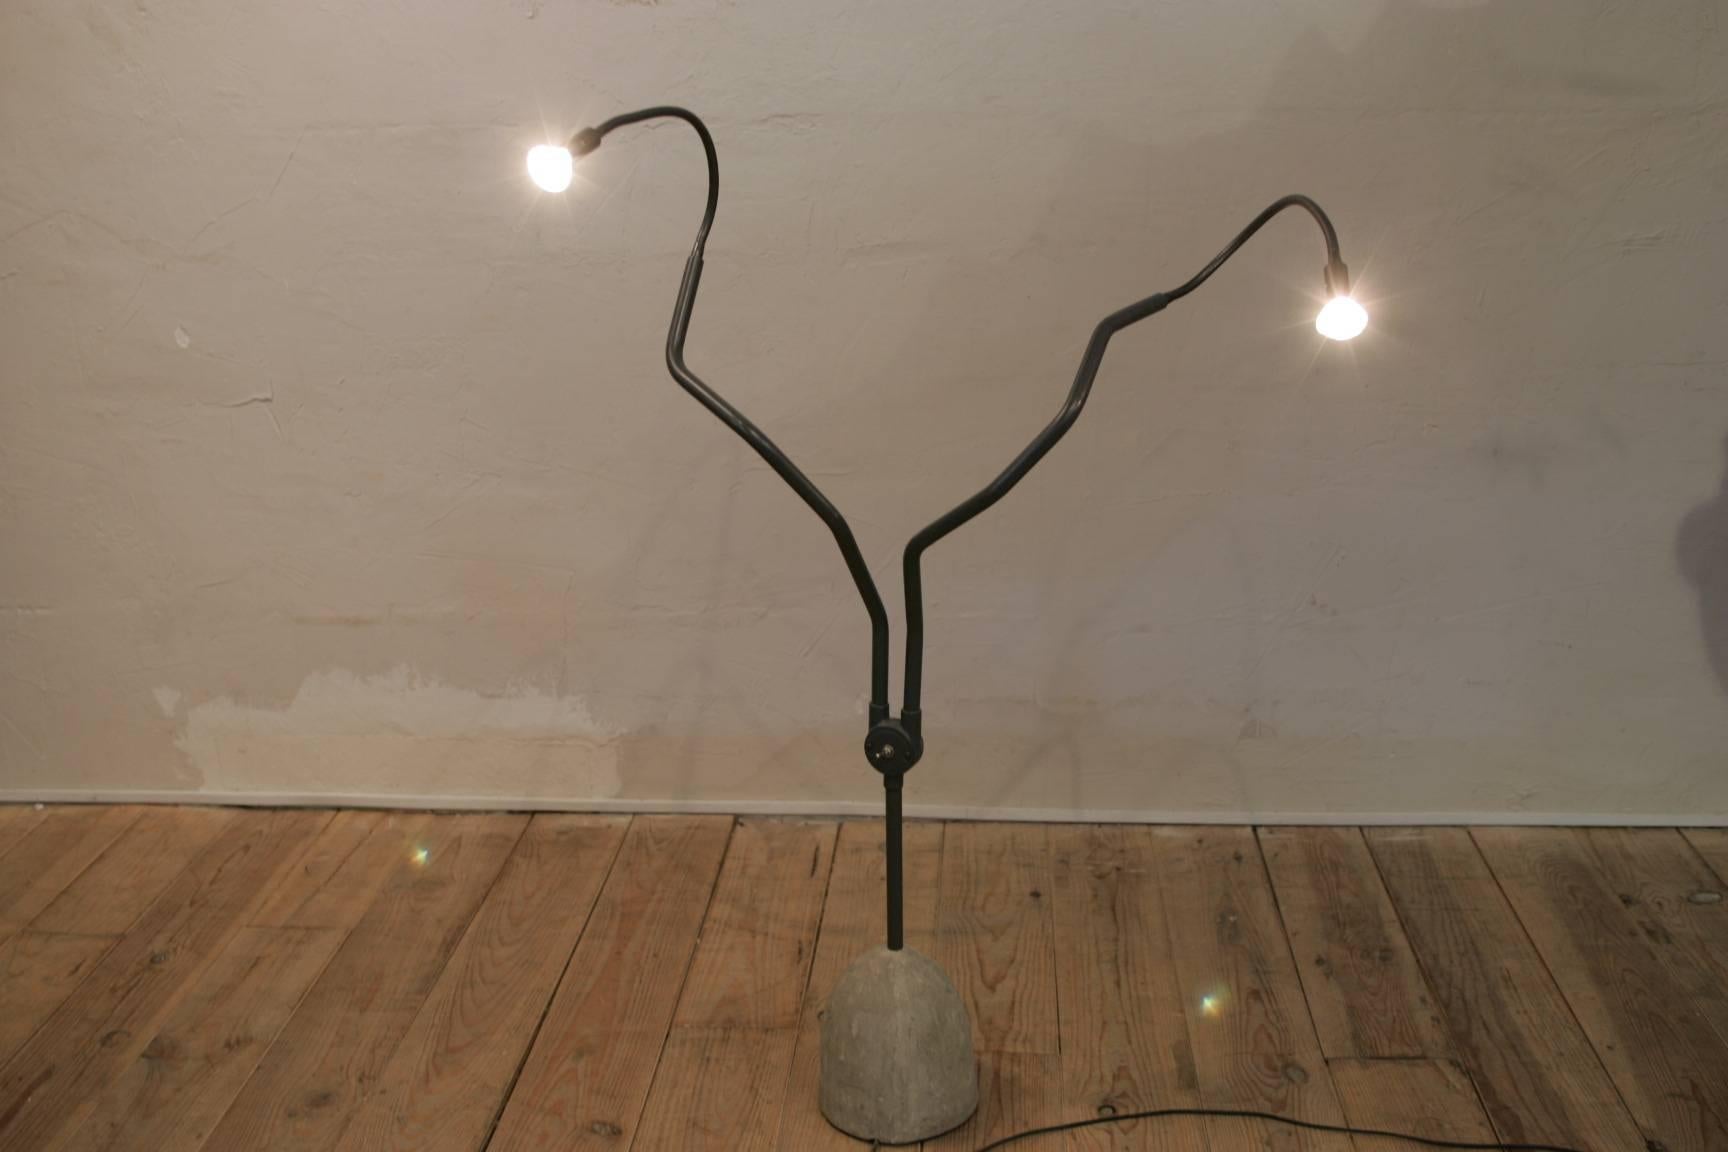 Brutalist Ron Arad Tree Light Floor Lamp Edited by Barton